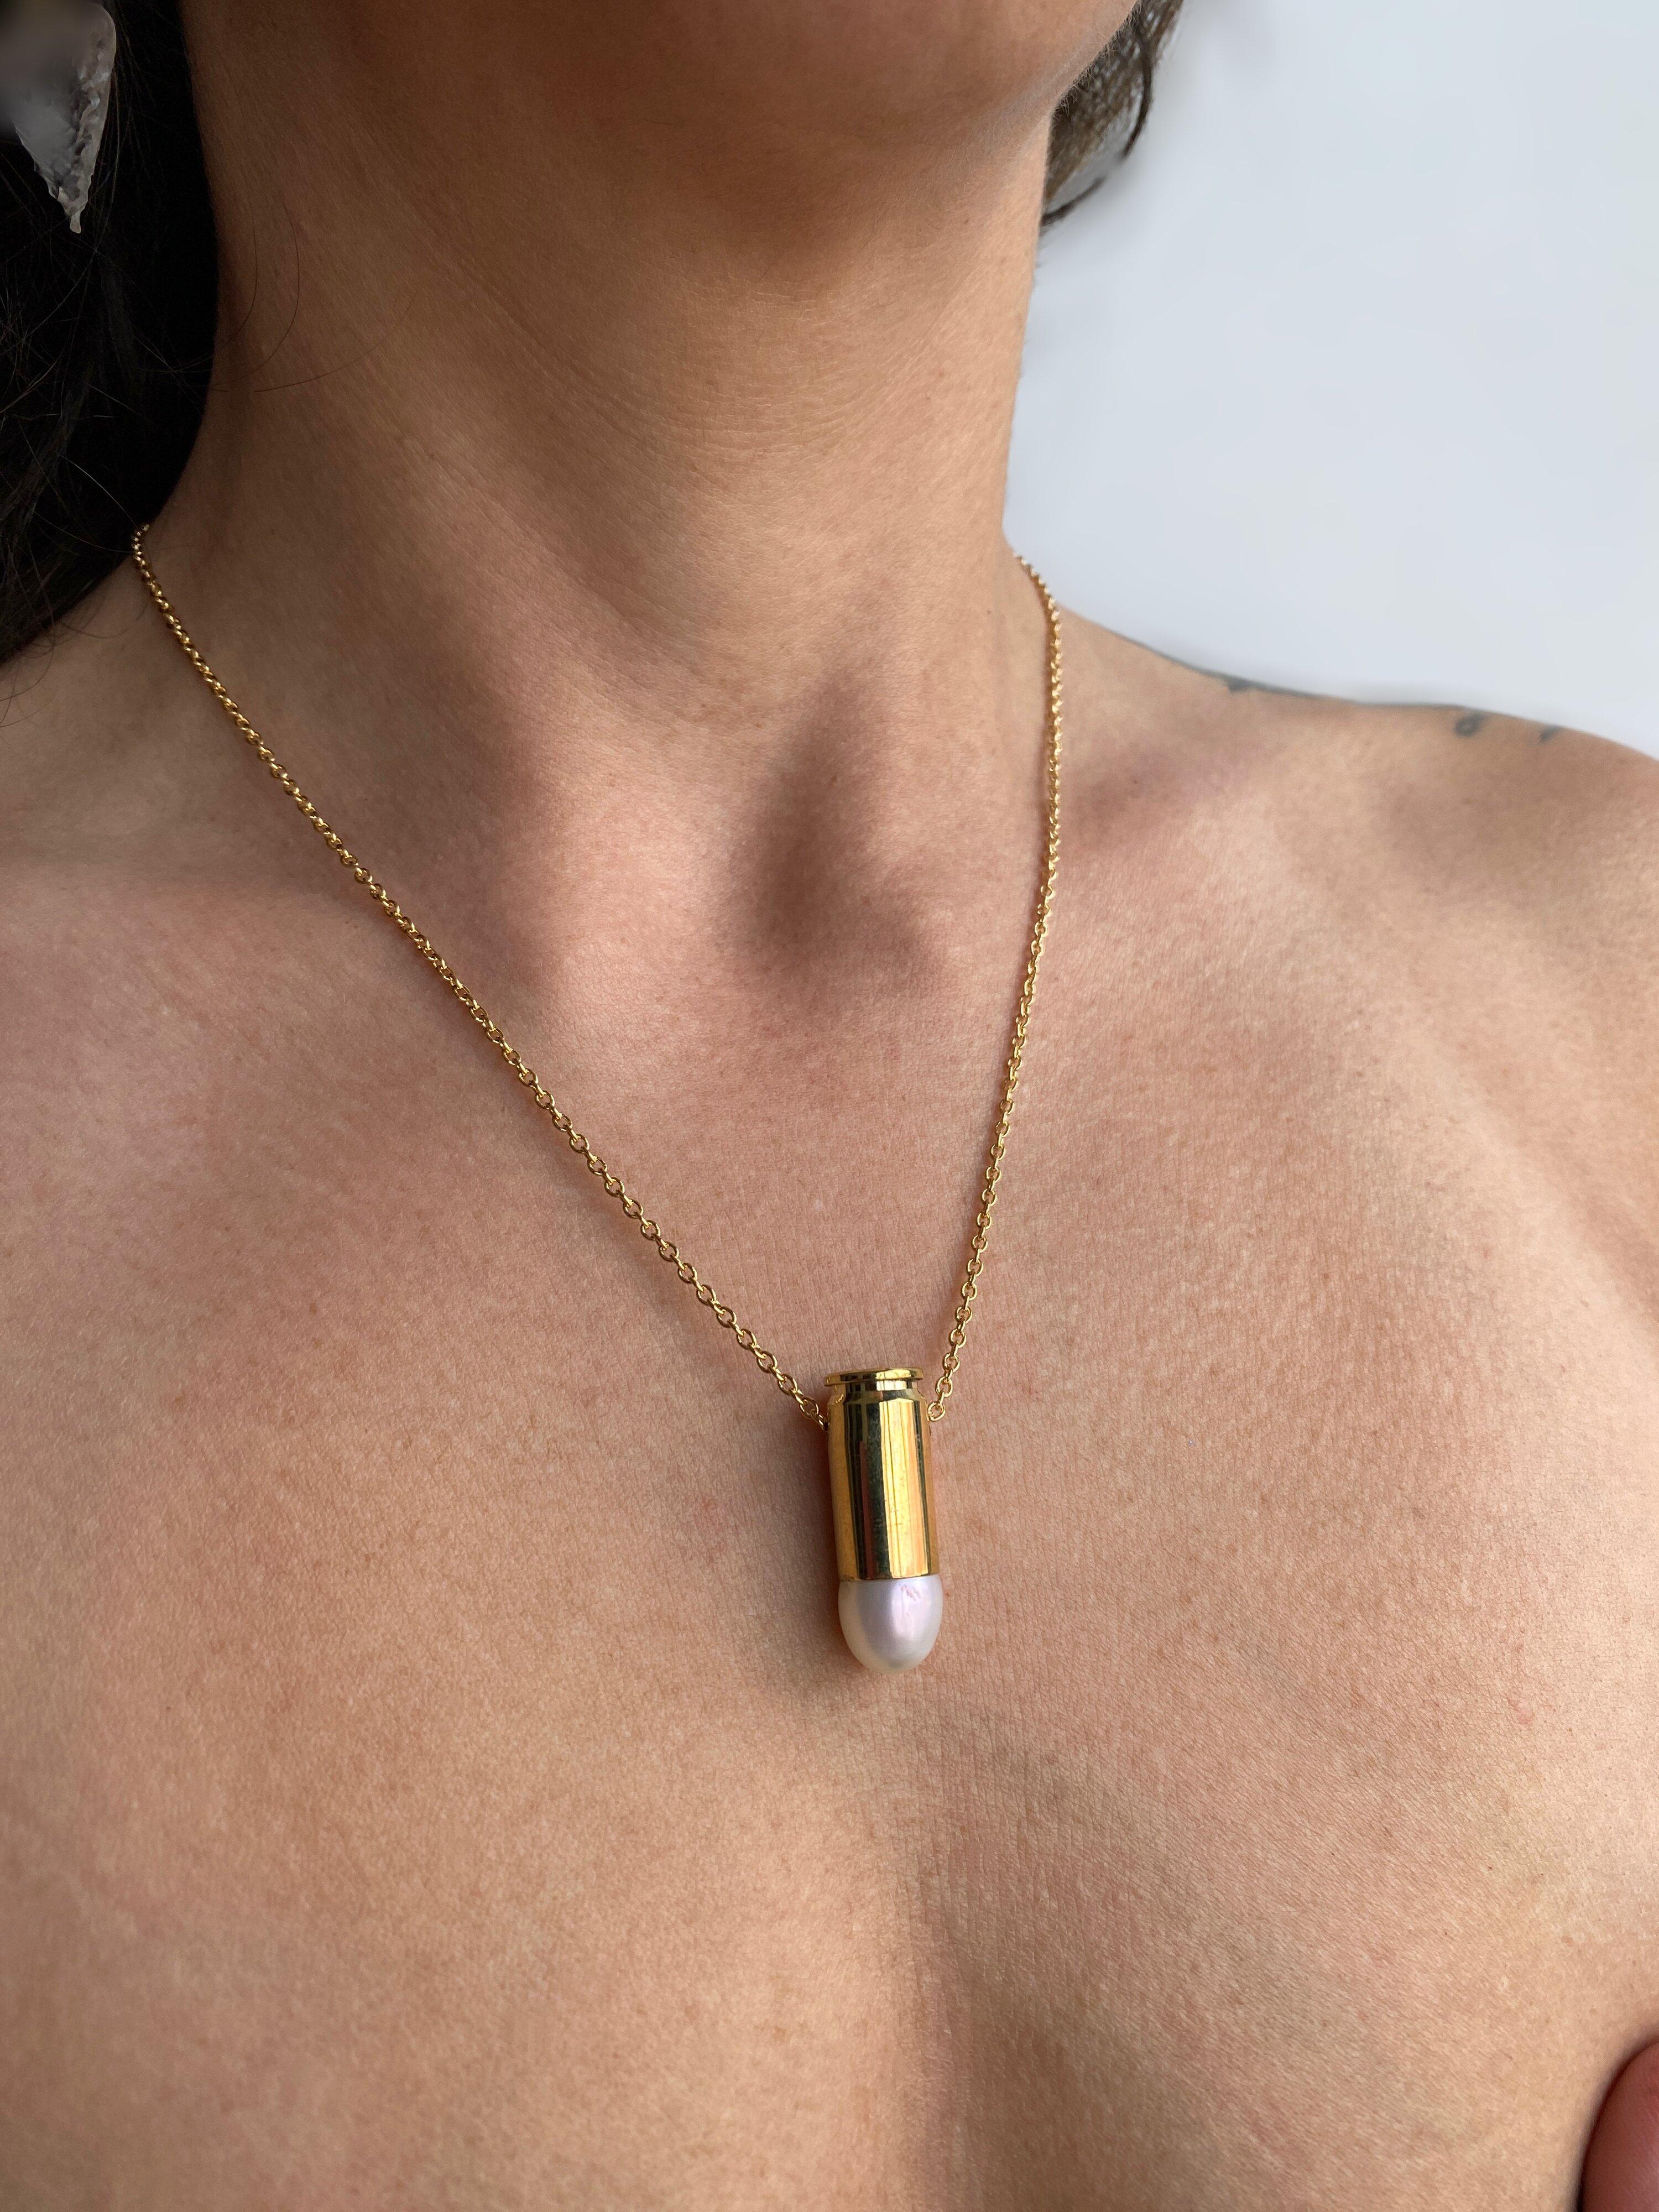 Diese bezaubernde Halskette besteht aus einer 9 mm großen, mit Gold gefüllten Kugelschatulle, die mit einer Süßwasserperle besetzt ist. Dieses Stück stammt aus der Kollektion 